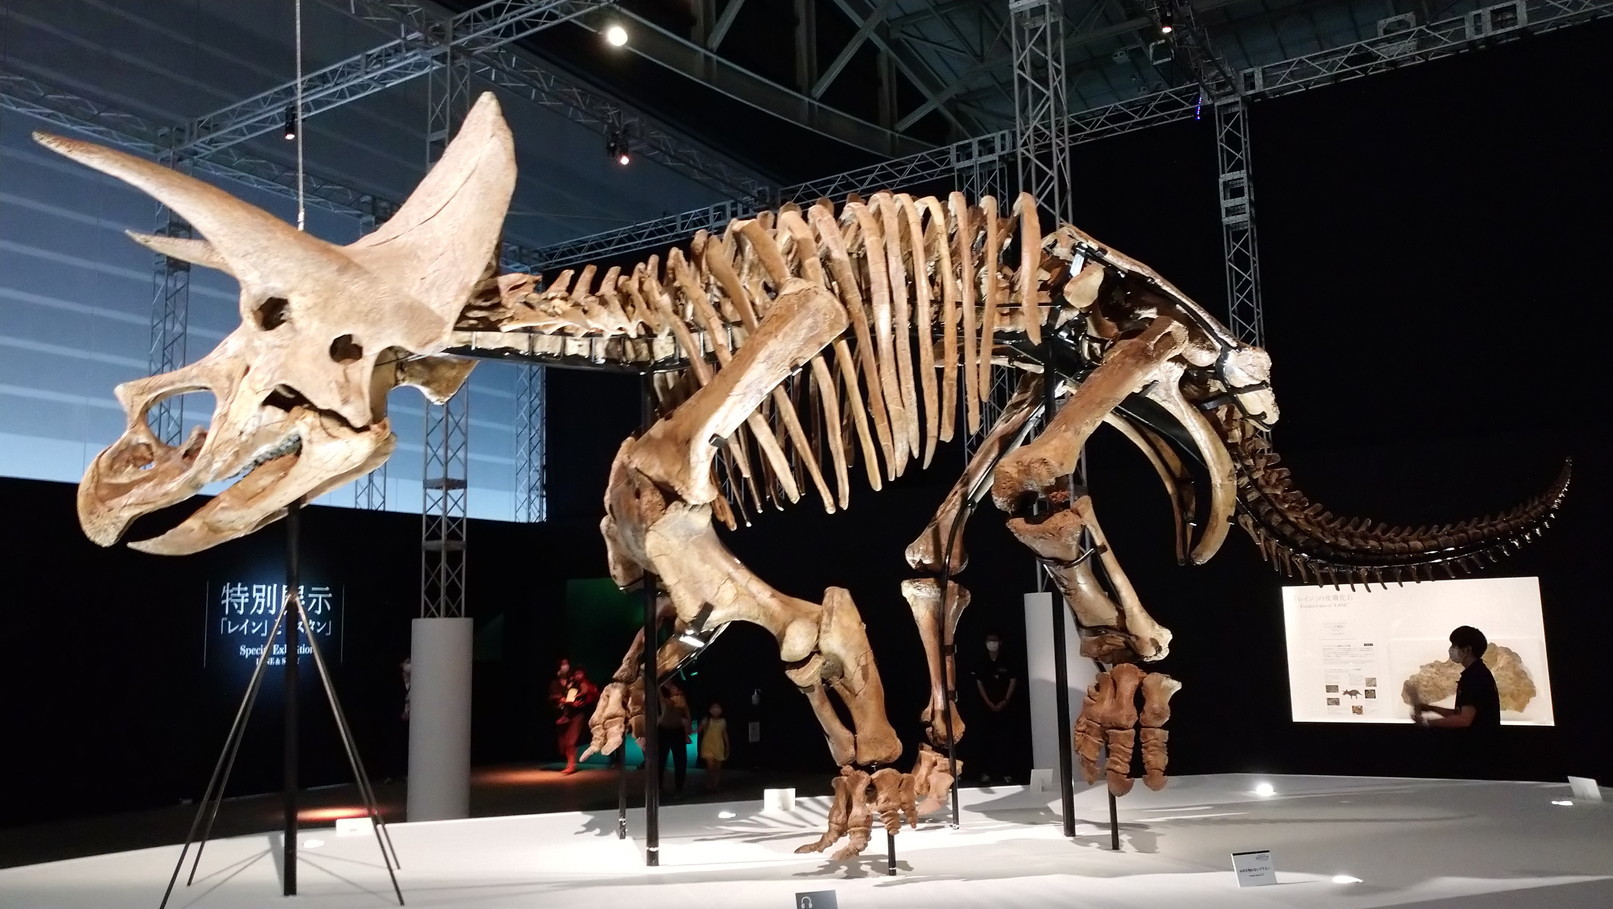 トリケラトプス「レイン」のほぼ完全な全身骨格化石をDinoScience 恐竜科学博 ～ララミディア大陸の恐竜物語～@パシフィコ横浜でみた！_c0002171_00314741.jpg